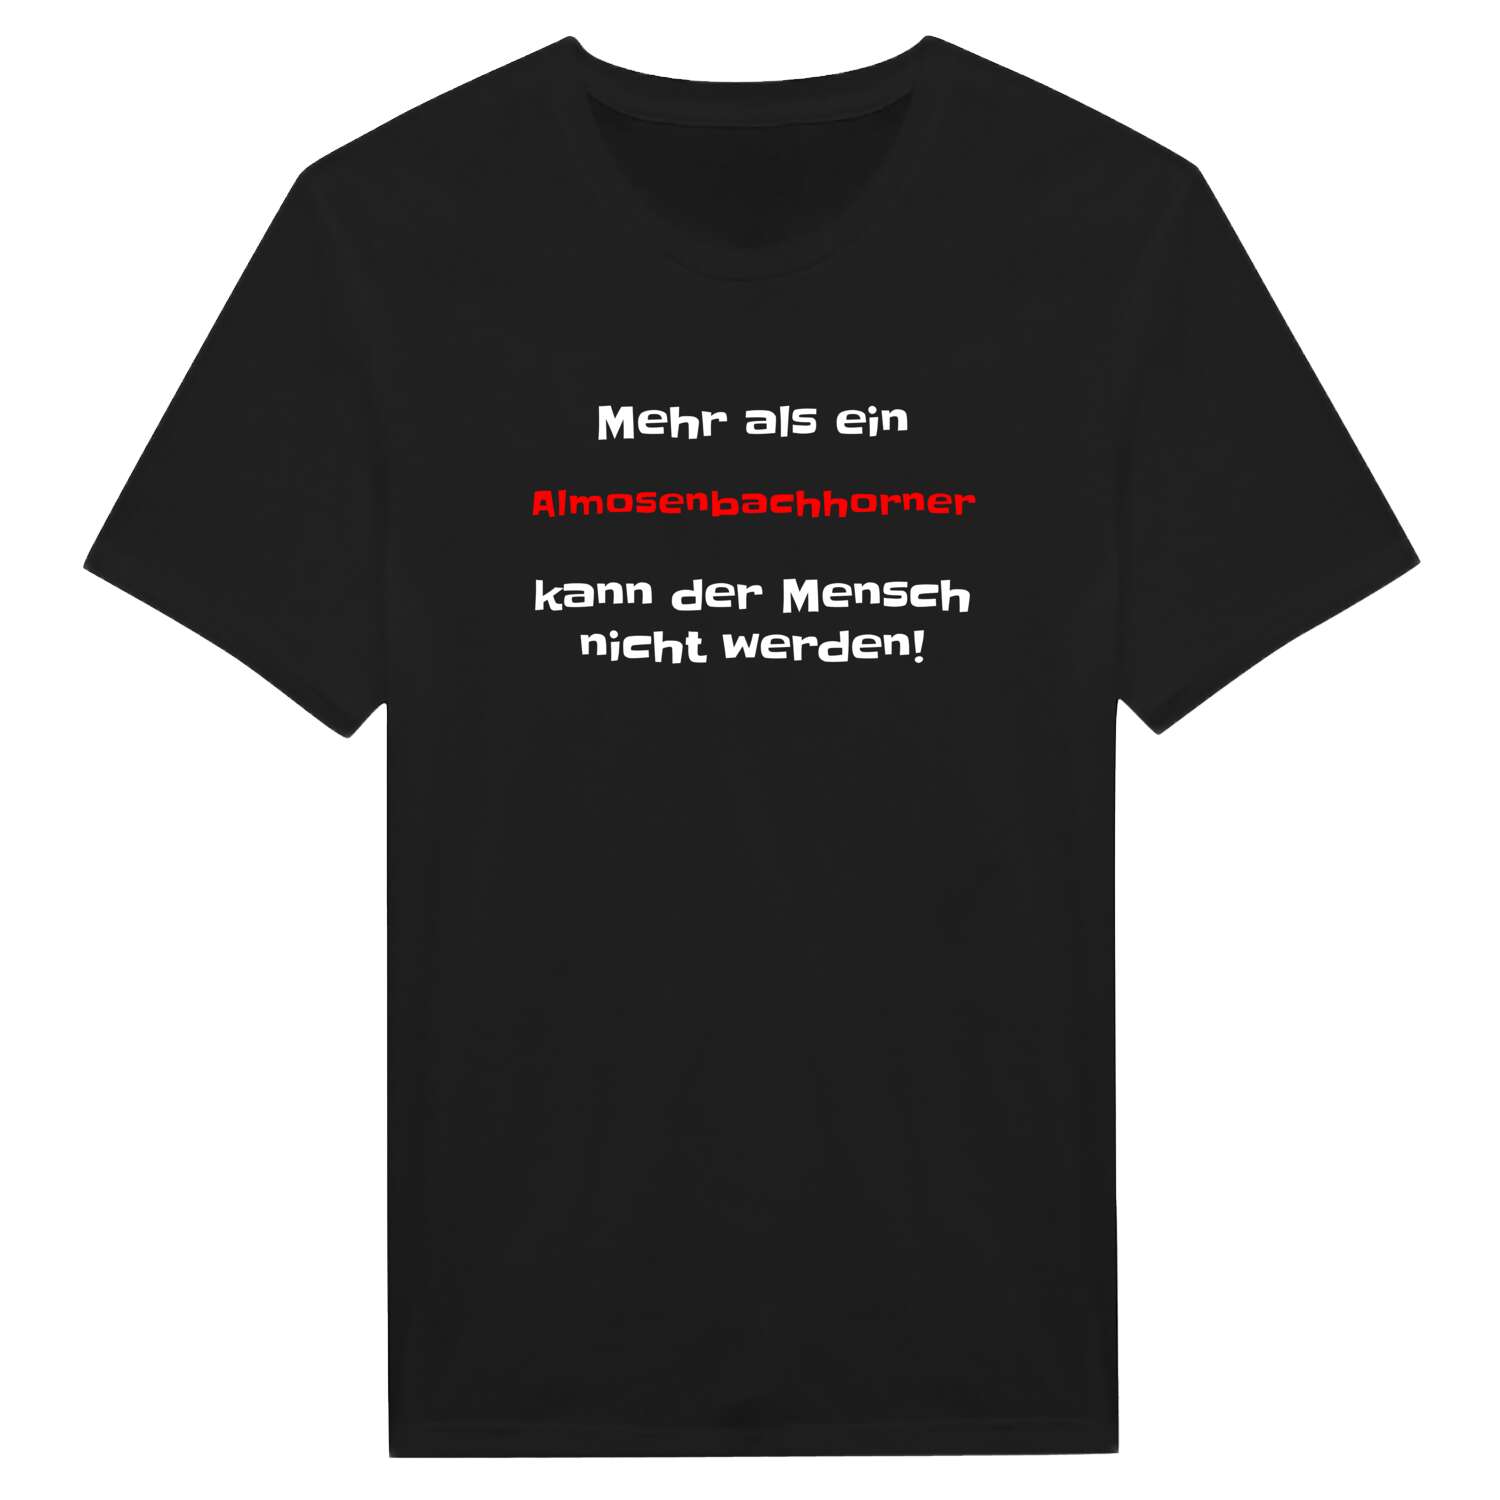 Almosenbachhorn T-Shirt »Mehr als ein«